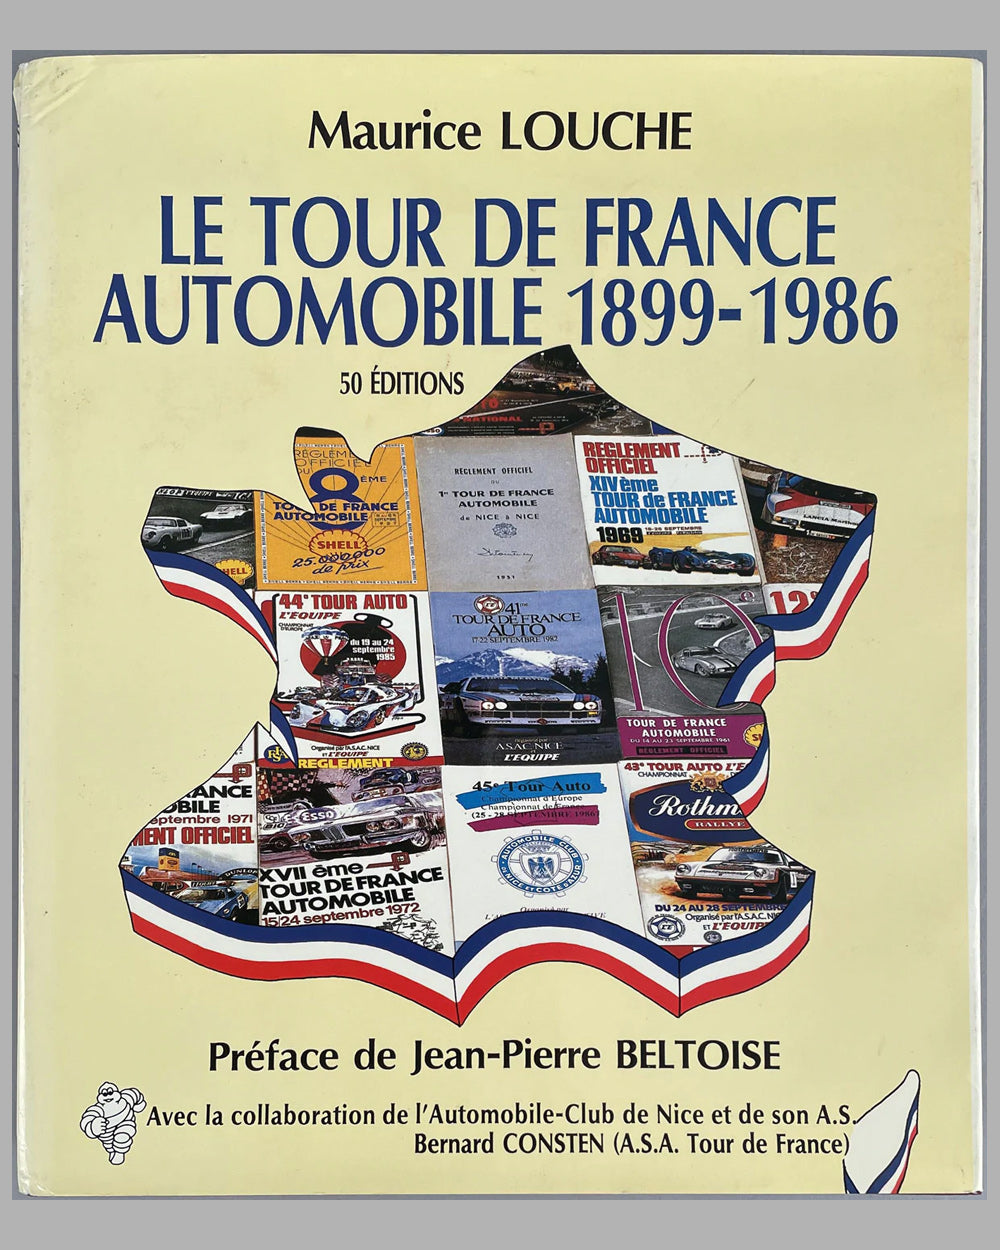 Le Tour de France Automobile, 1899-1986 book by Maurice Louche, 1987, 1st edition